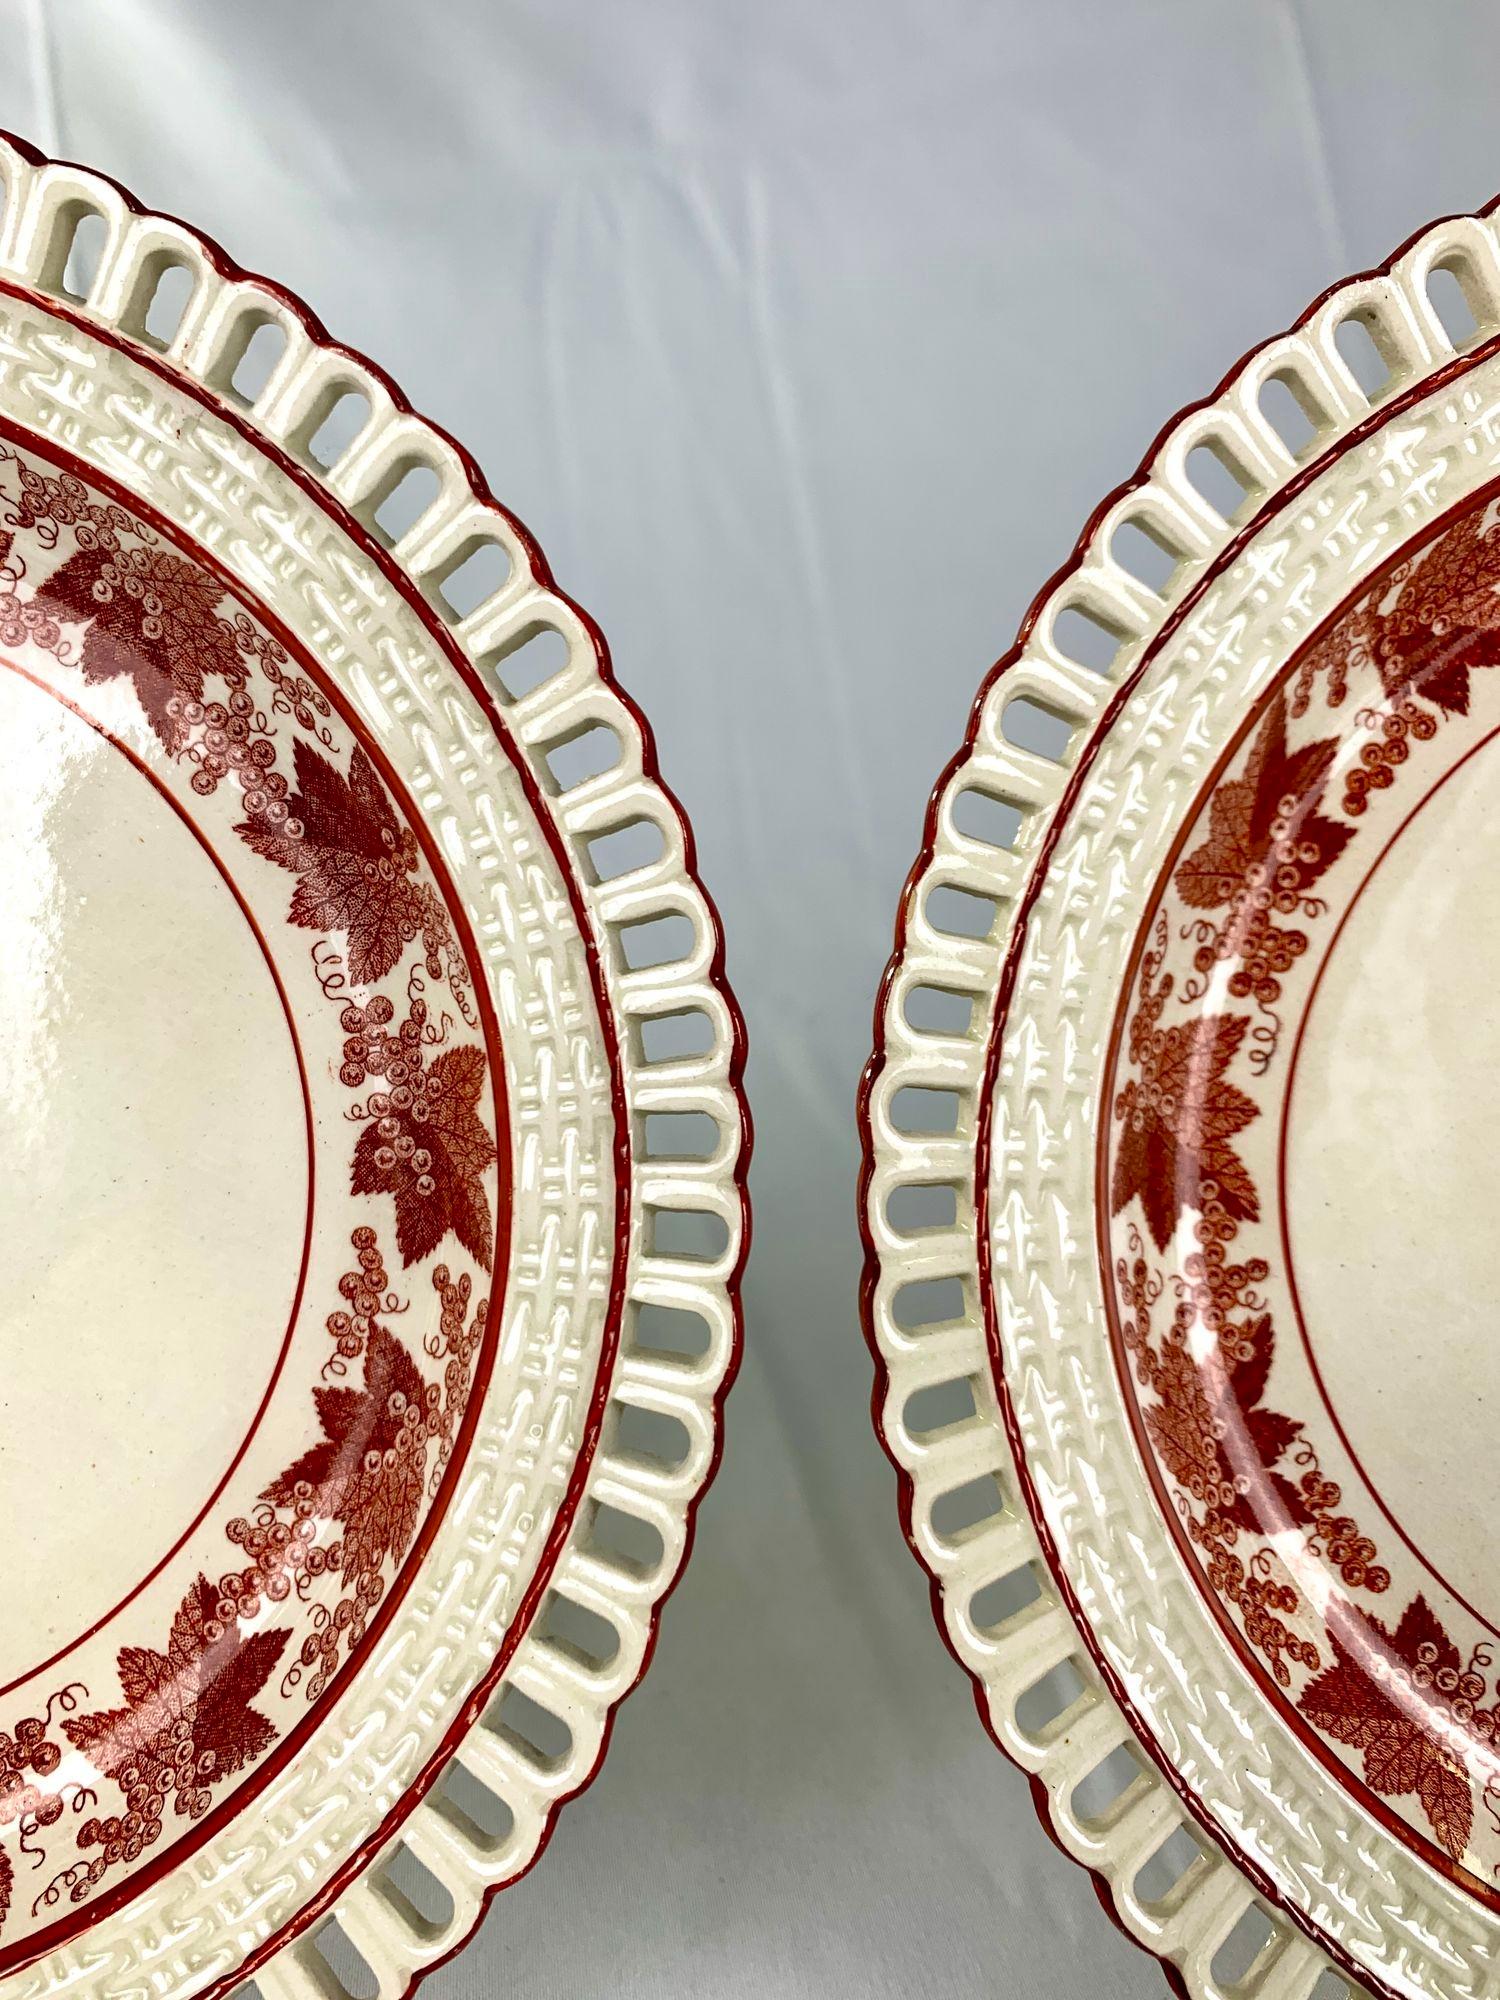 Dieses Paar von Desserttellern aus Sahnegeschirr stammt aus dem frühen 19. Jahrhundert.
Das Geschirr wurde um 1810 hergestellt und ist an den breiten Rändern schön verziert.
Die Umrandung besteht aus drei konzentrischen Bändern, die jeweils von